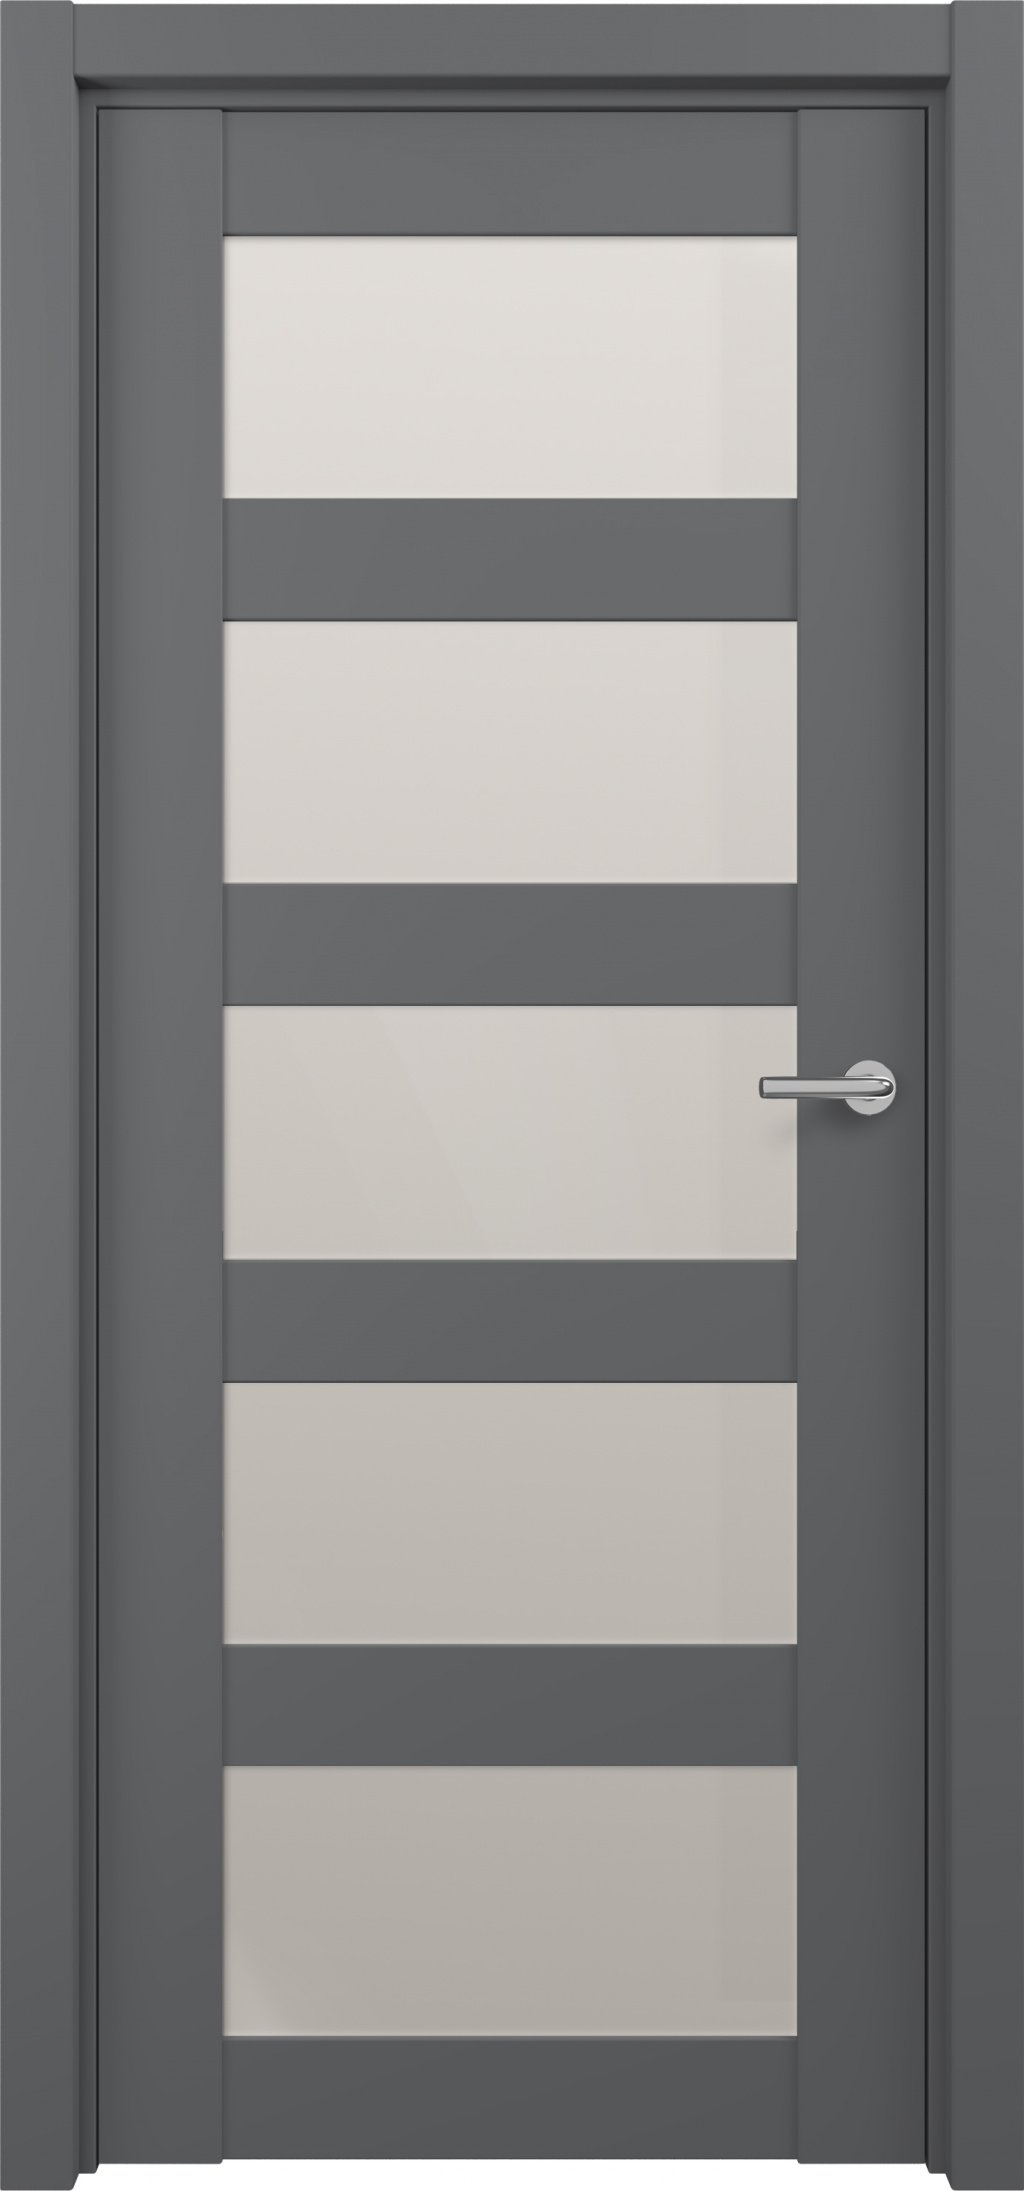 Zadoor Межкомнатная дверь S15, арт. 15822 - фото №2